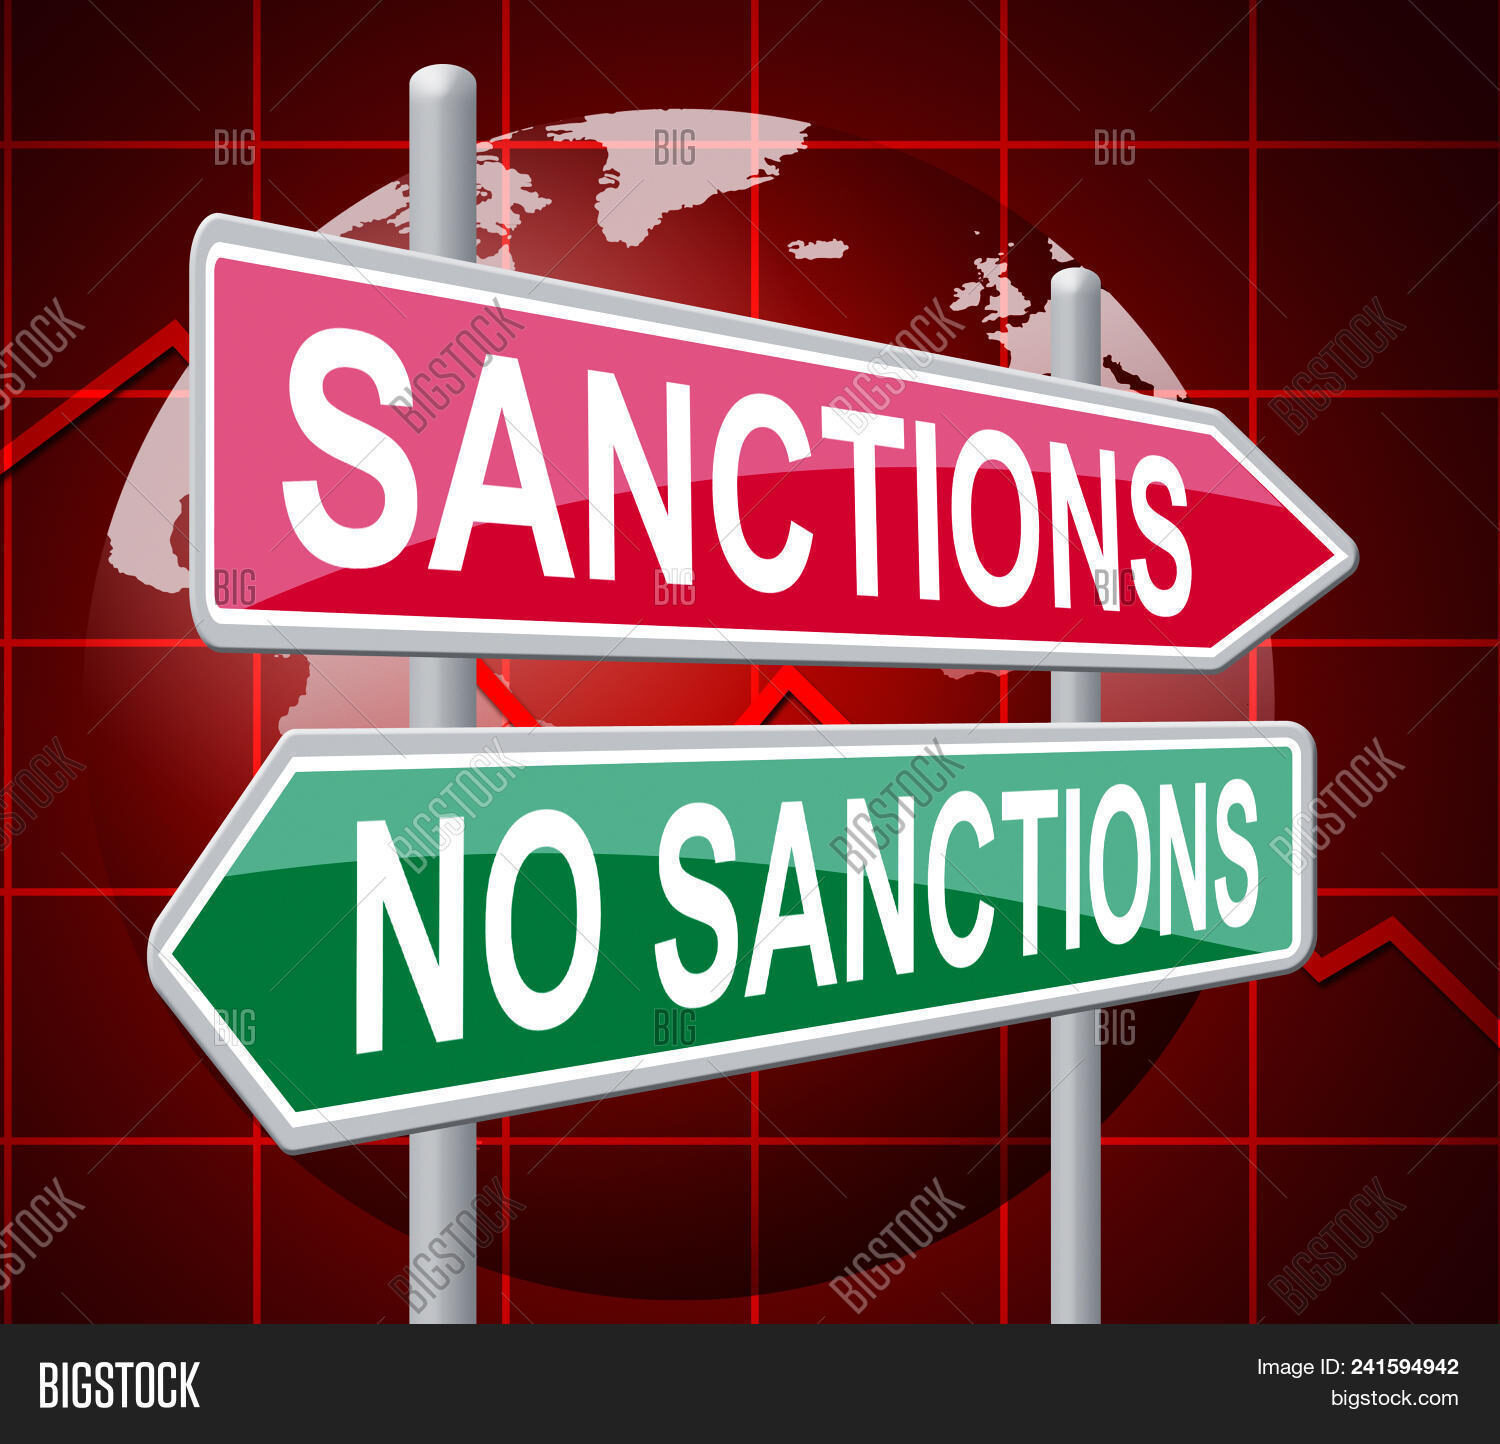 sanctions no sanctions